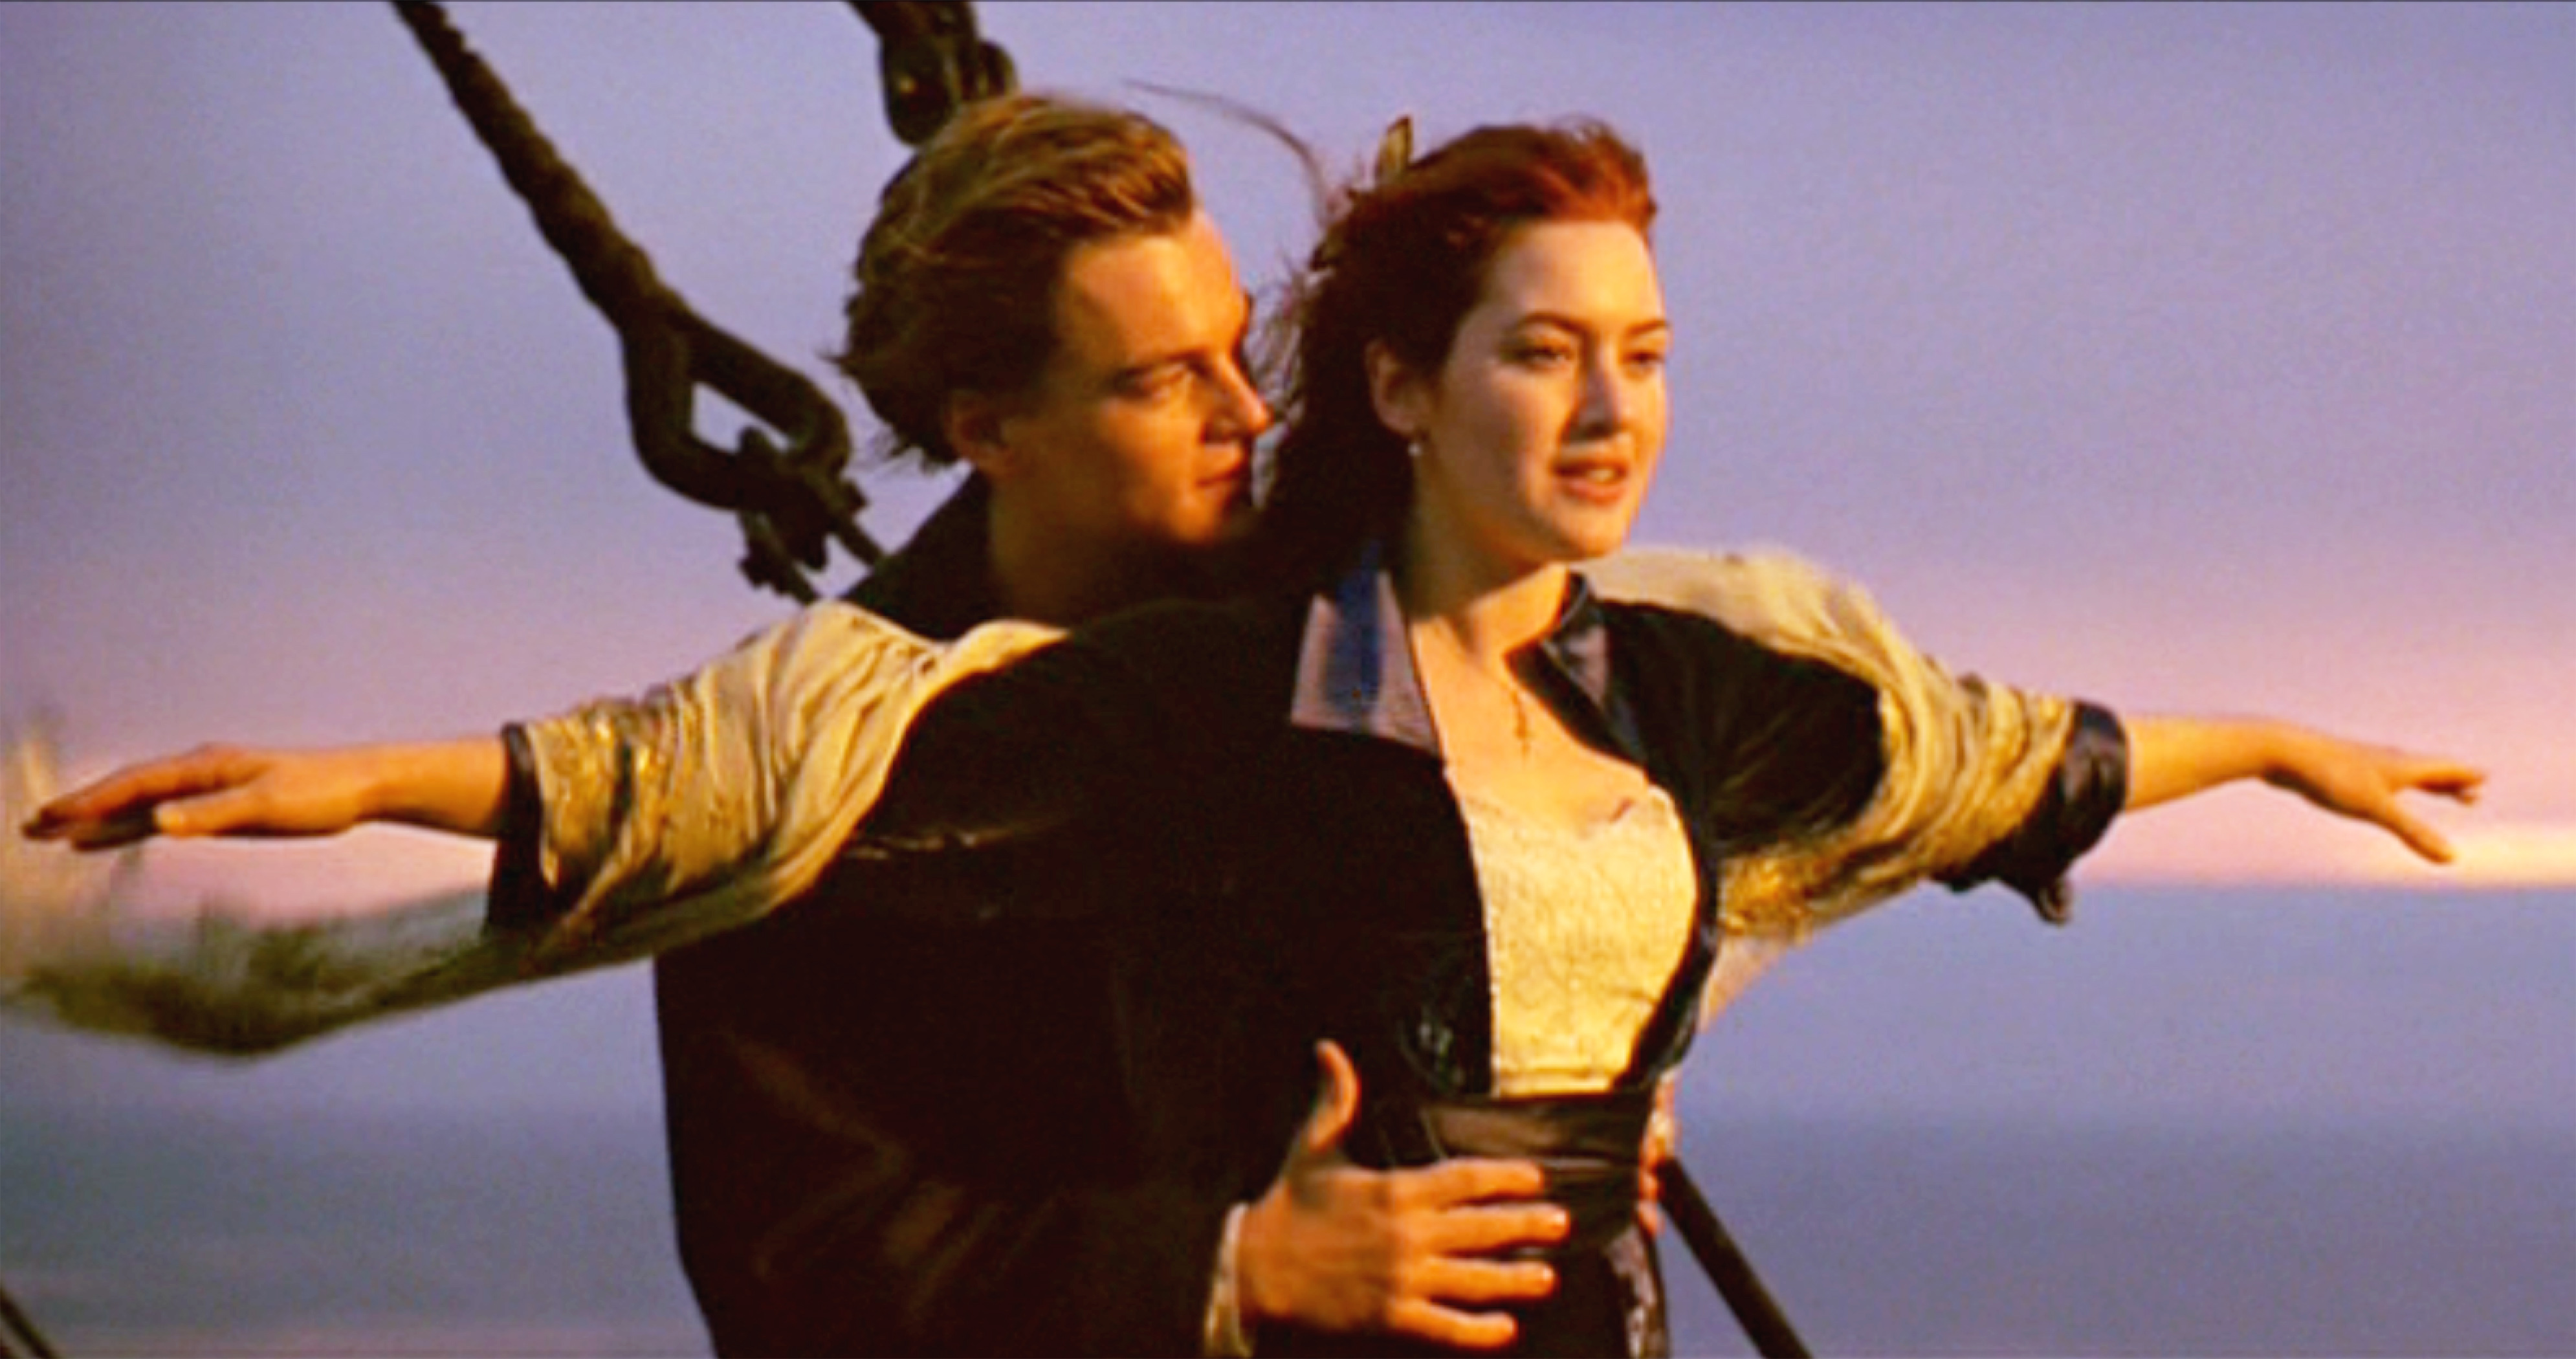 Leonardo DiCaprio como Jack y Kate Winslet como Rose en la película "Titanic", en 1997 | Foto: Getty Images